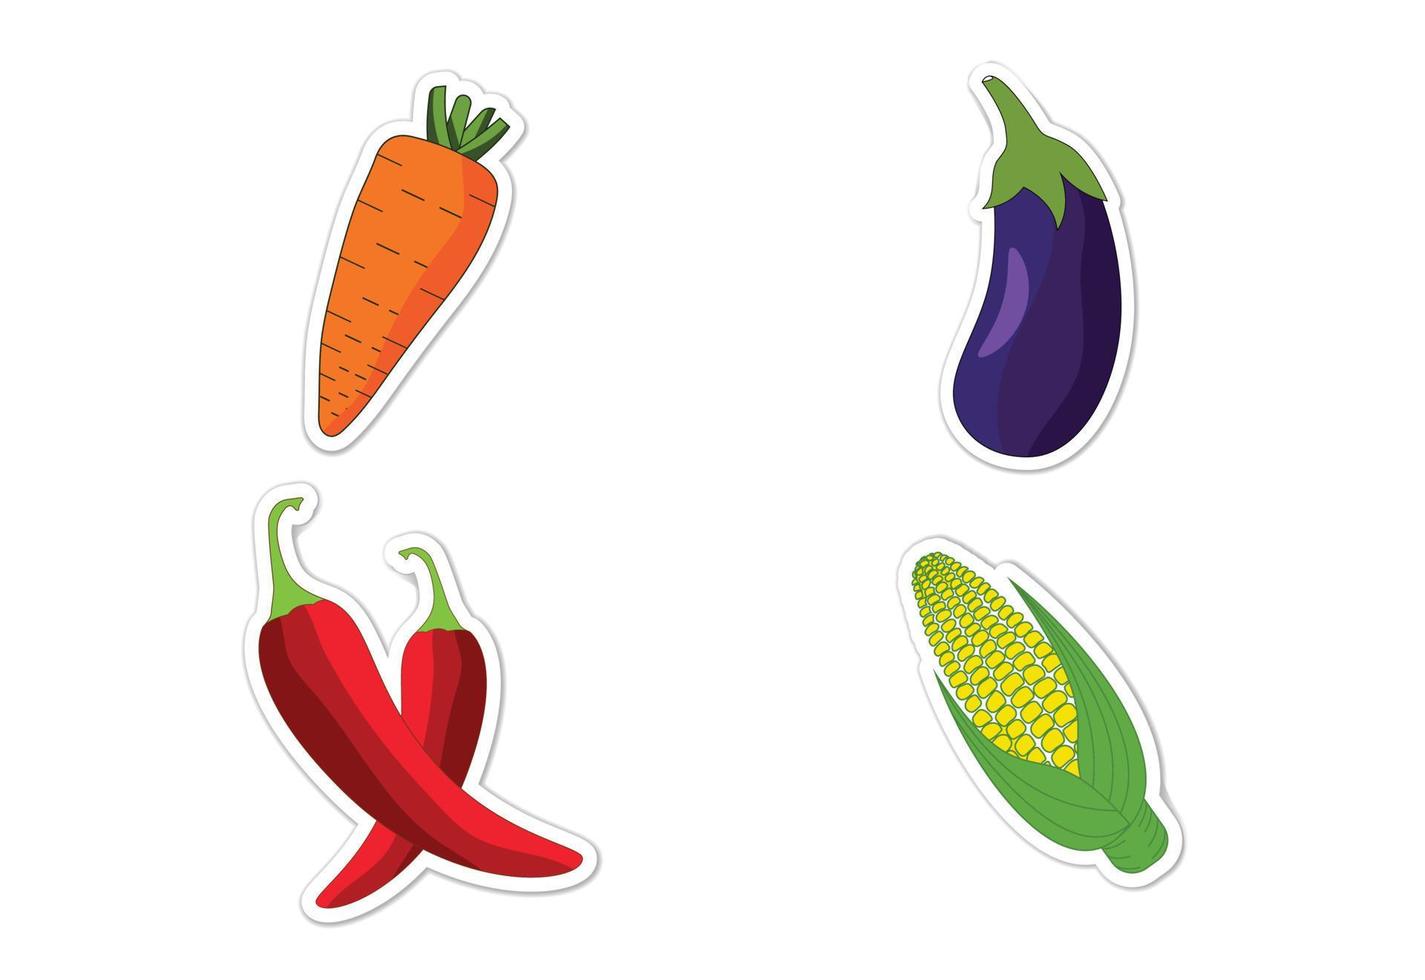 Sticker set of different vegetables, Flat vector illustration